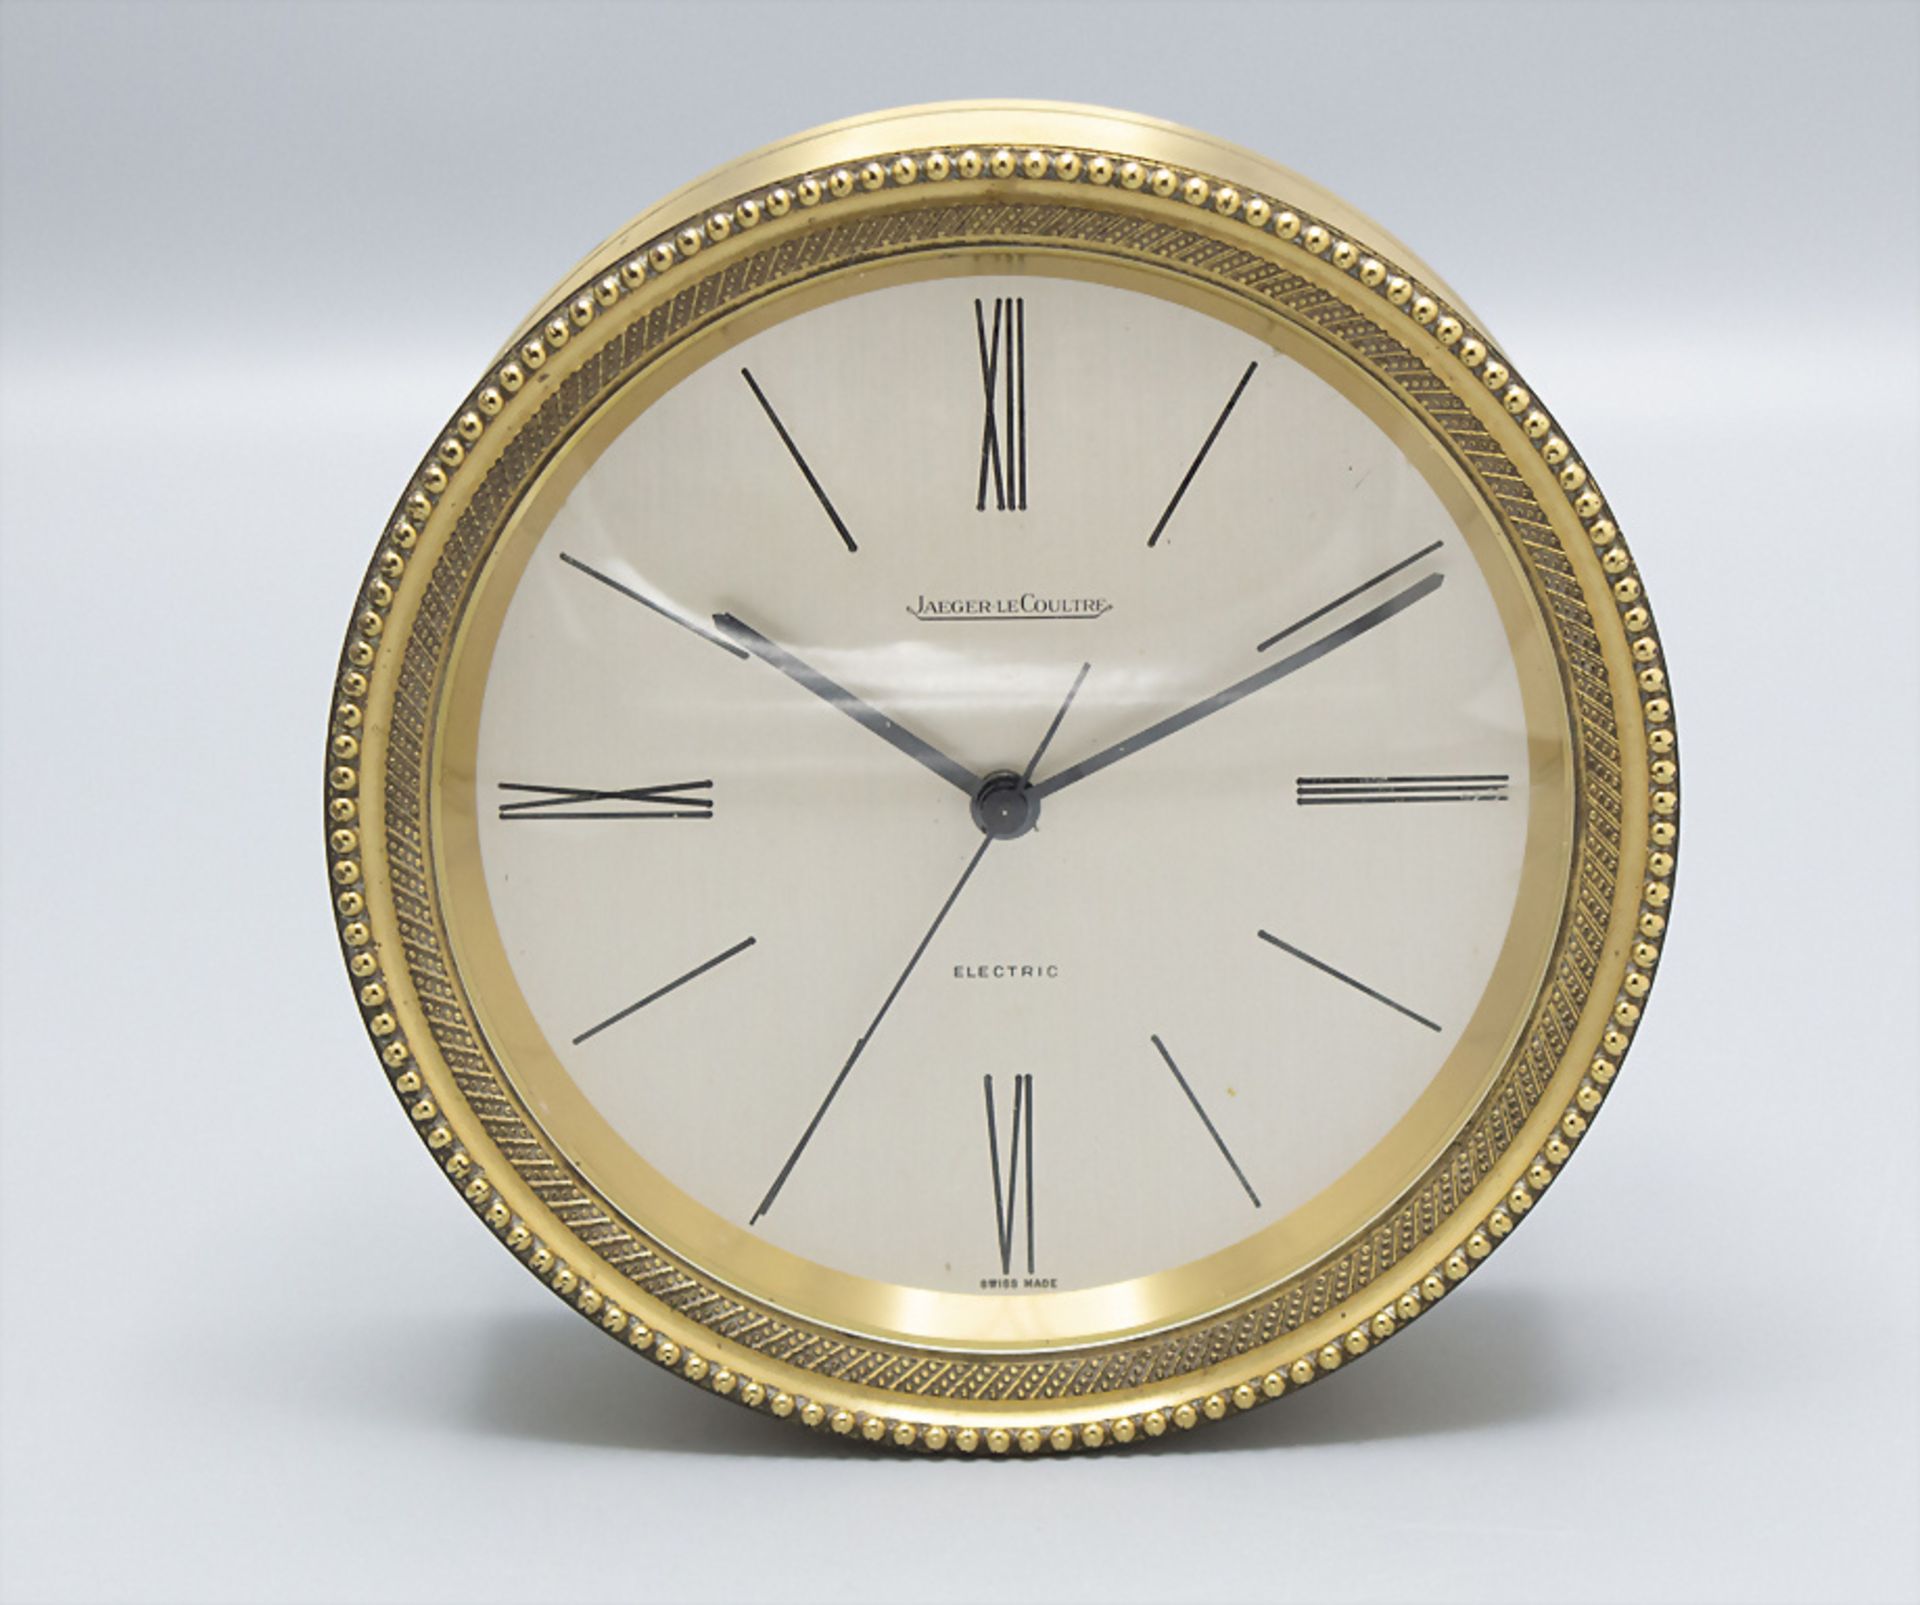 Tischuhr / A table clock, Jaeger LeCoultre, Swiss/Schweiz, um 1970